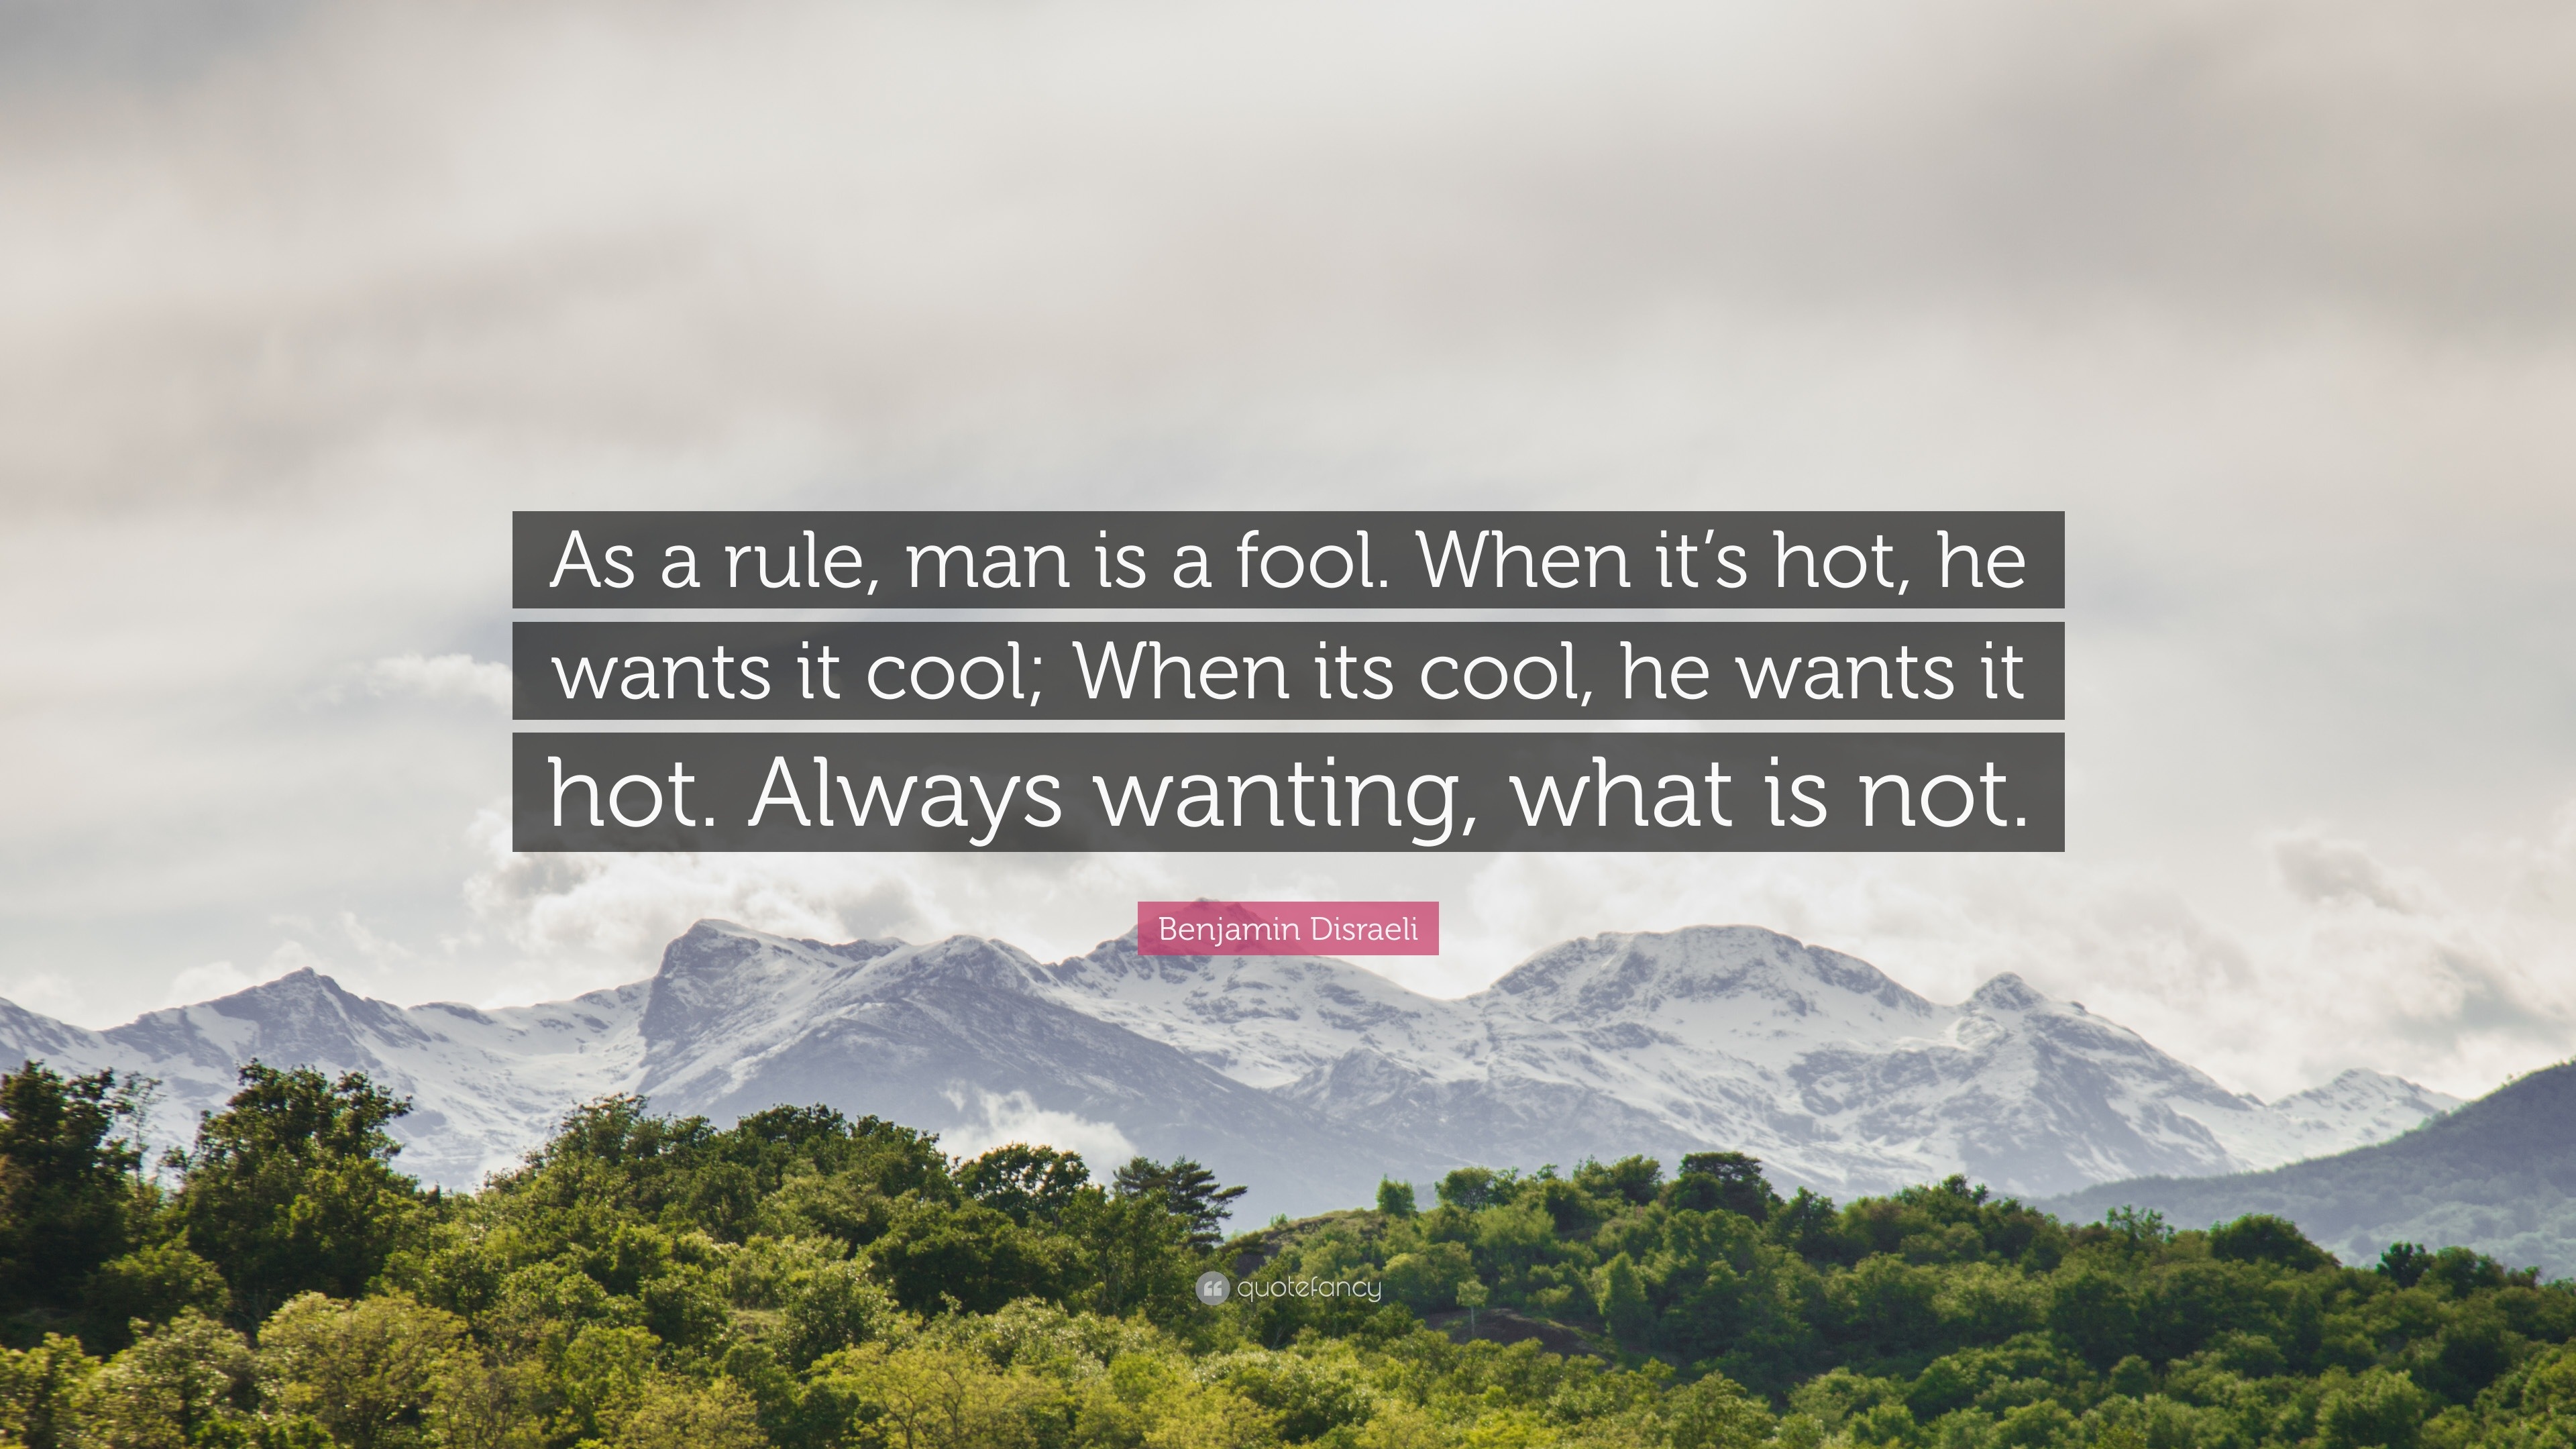 Benjamin Disraeli Quote: “As a rule, man is a fool. When it's hot, he wants  it